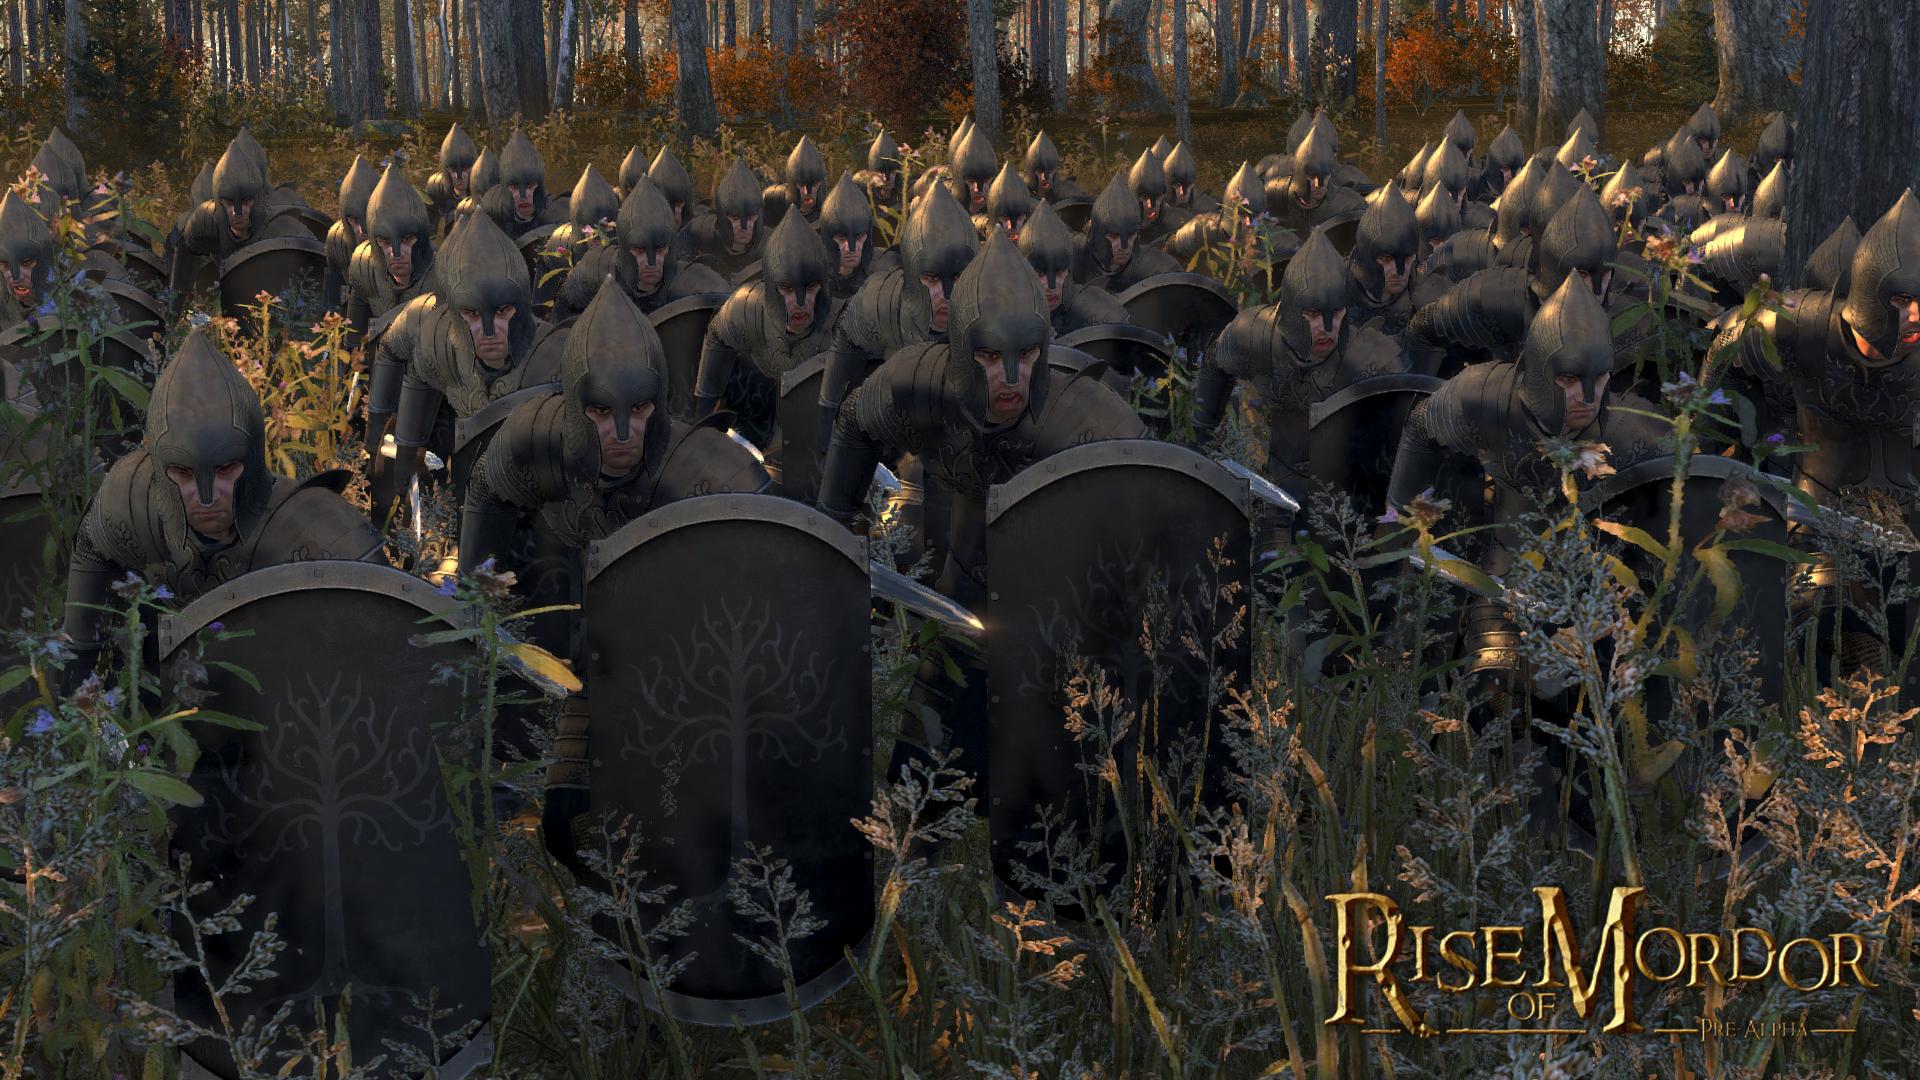 Gondor Sword Infantry Image Total War Rise Of Mordor